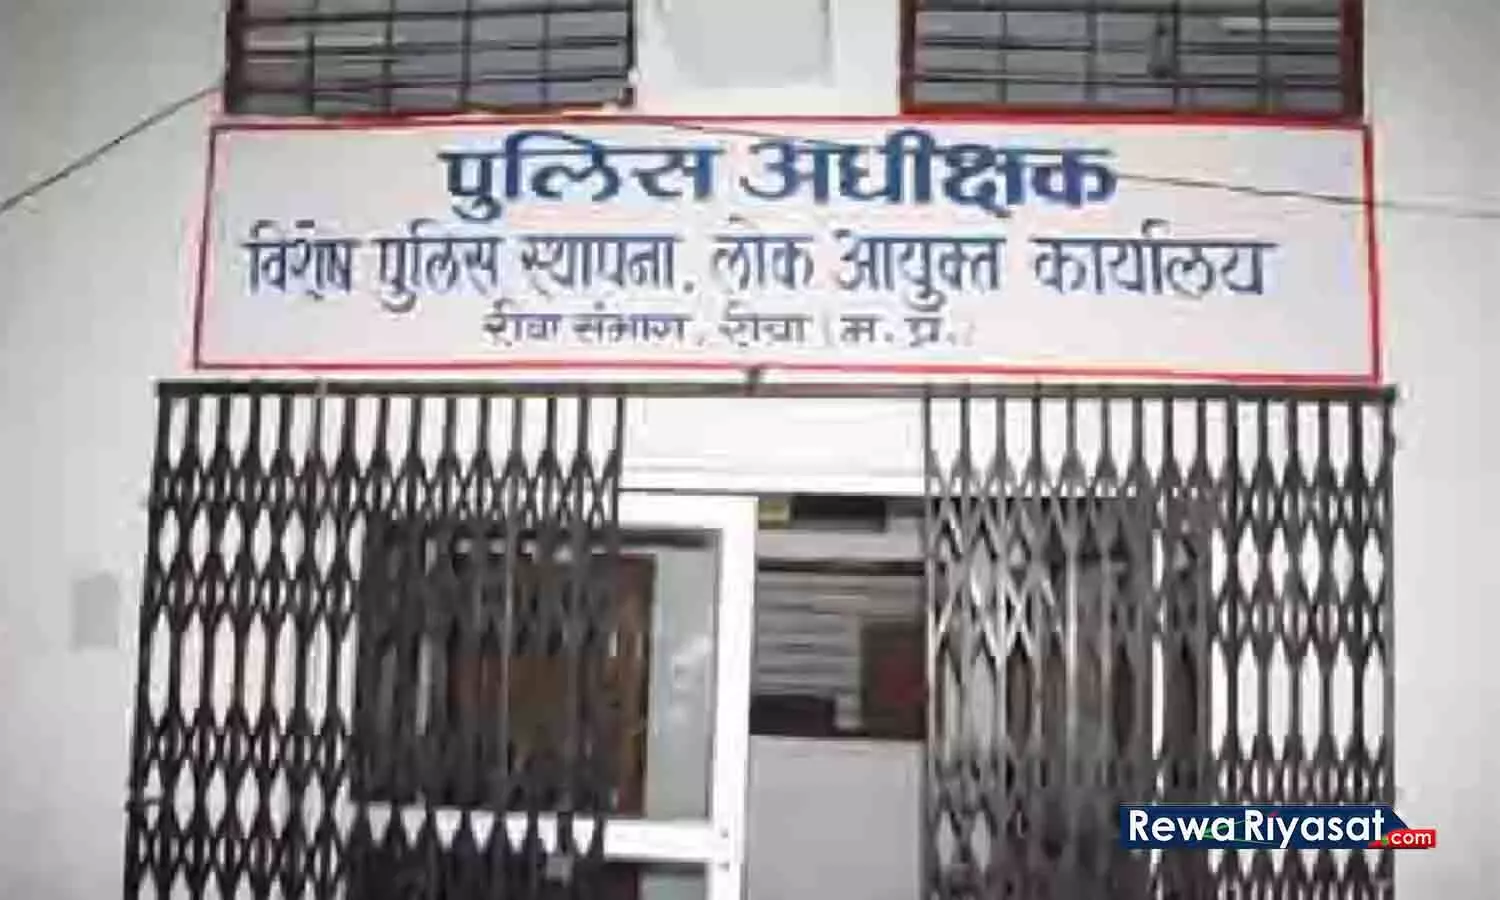 आय से अधिक संपत्ति का मामला, सिरमौर BSP प्रत्याशी वीडी पांडेय के खिलाफ रीवा लोकायुक्त में शिकायत